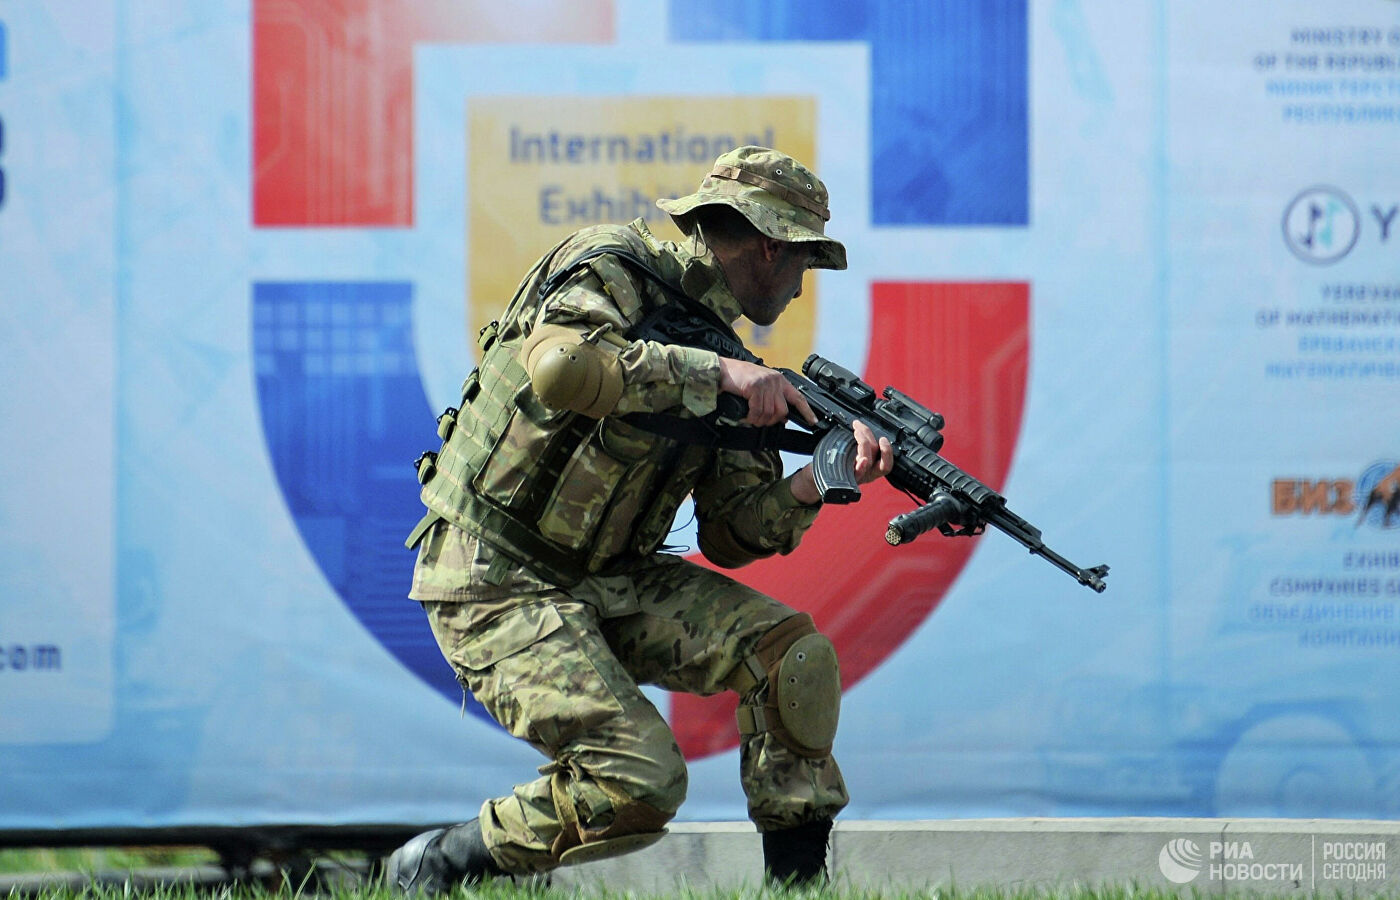 ՀՀ-ում քրգործ է հարուցվել ռուսական ընկերության կողմից զենքի մատակարարման մրցույթի խափանման համար